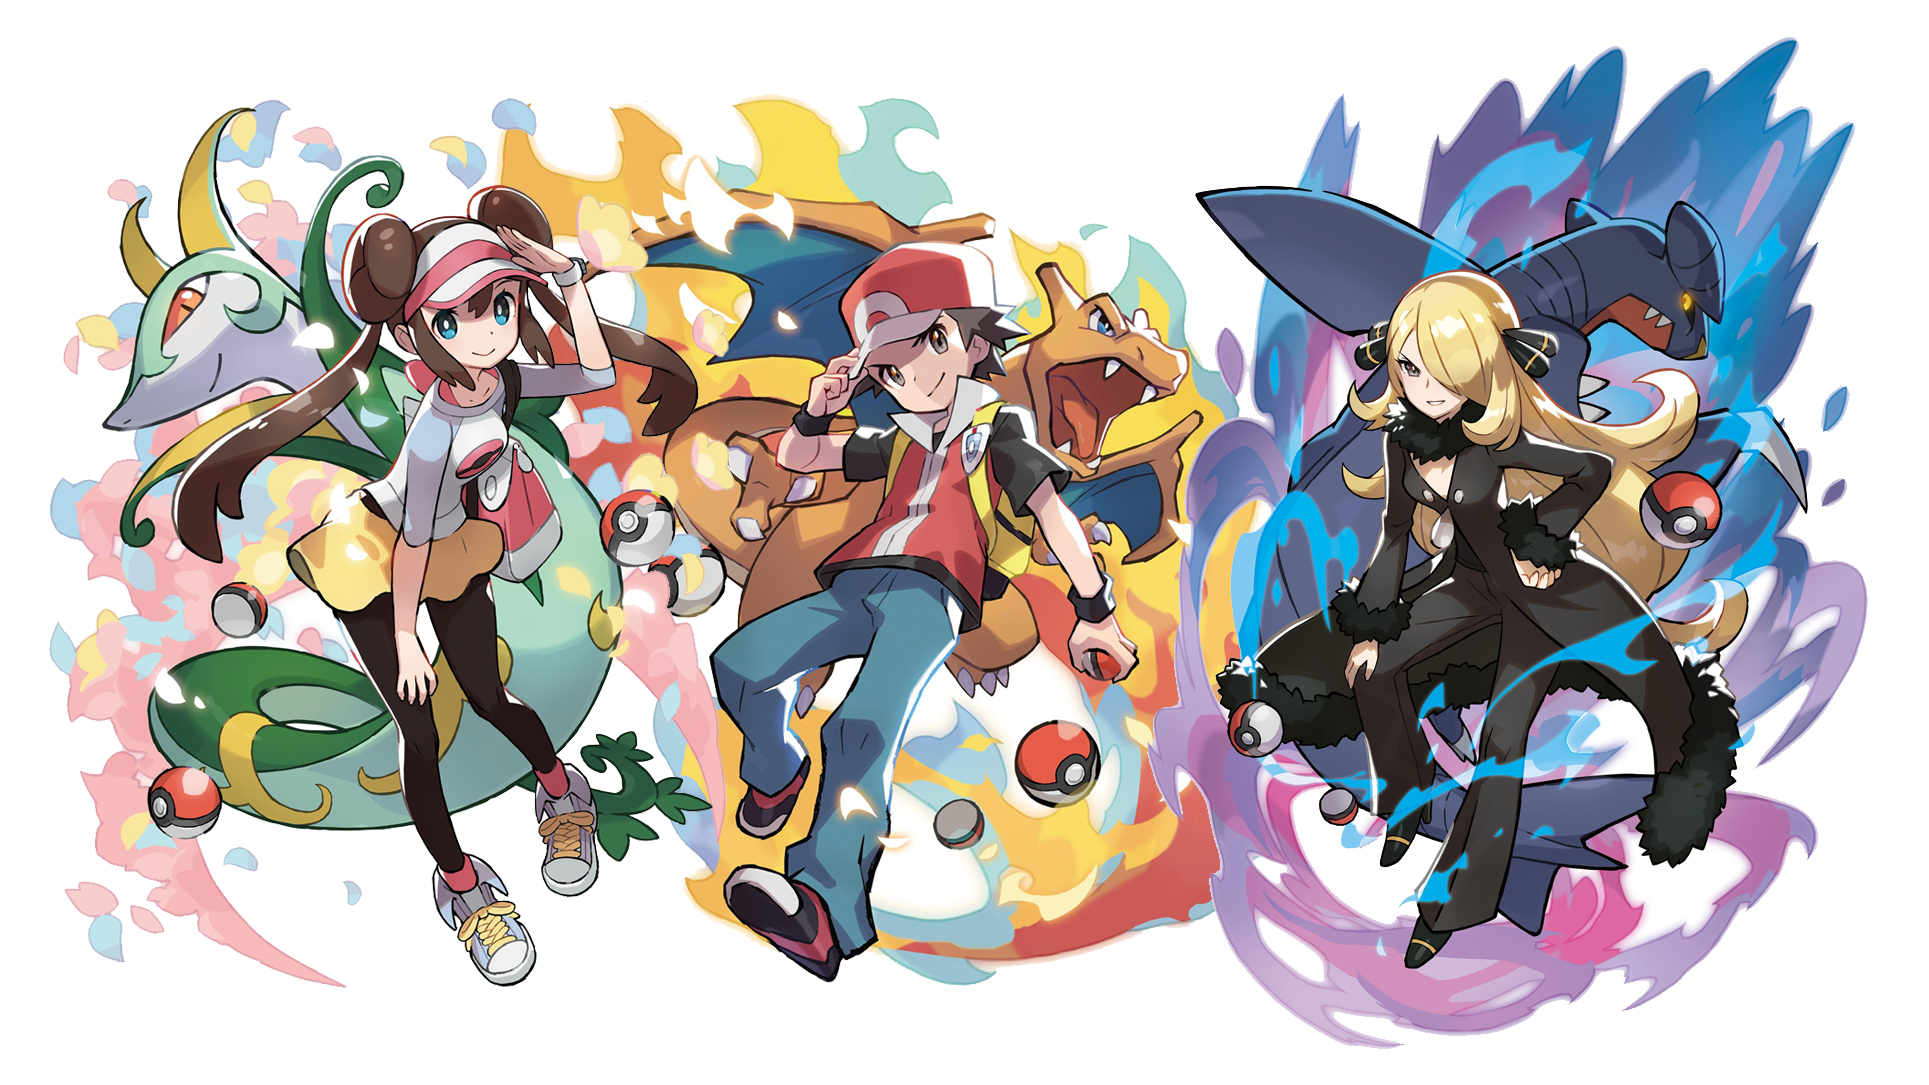 HD wallpaper: Pokemon digital wallpaper, Pokémon, Pokémon trainers